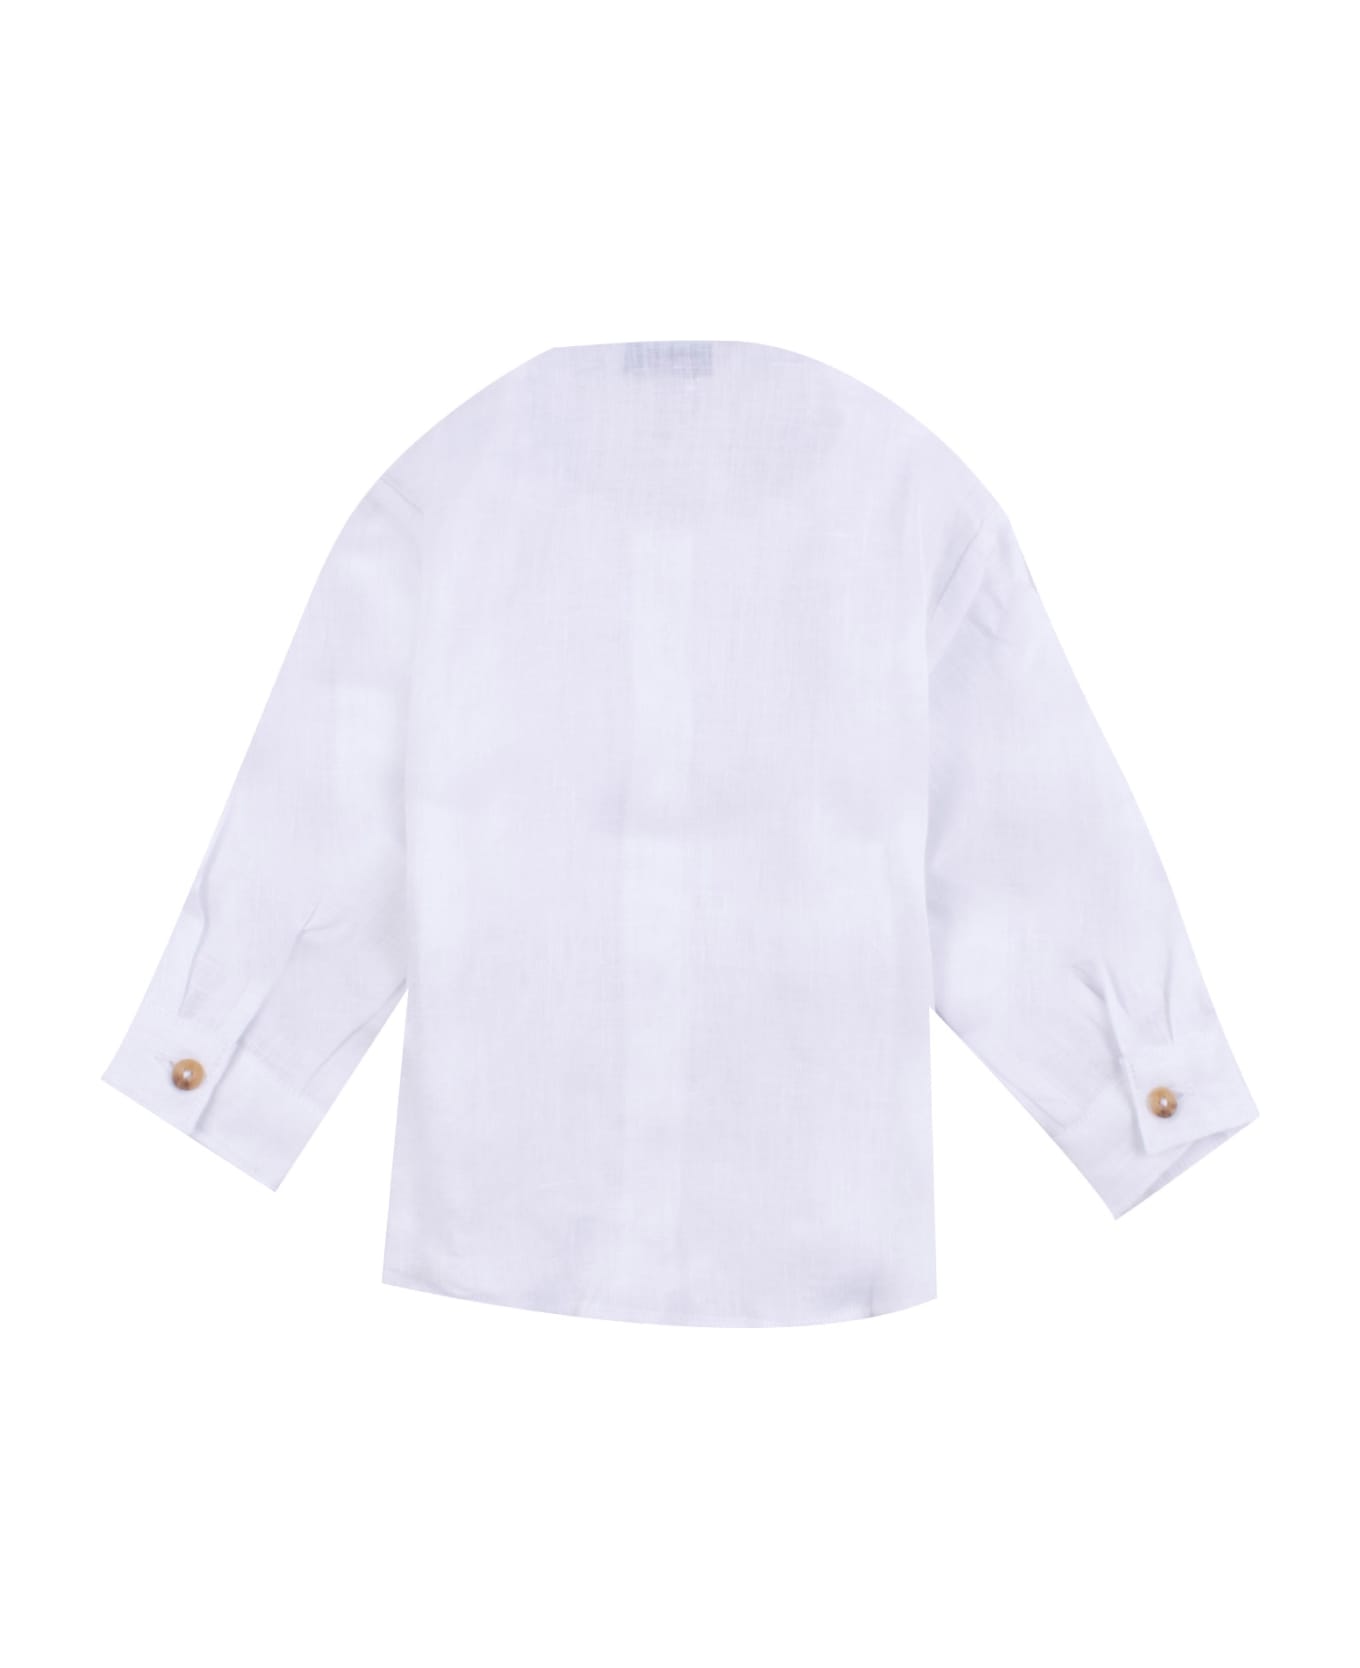 Manuel Ritz Linen Shirt - White